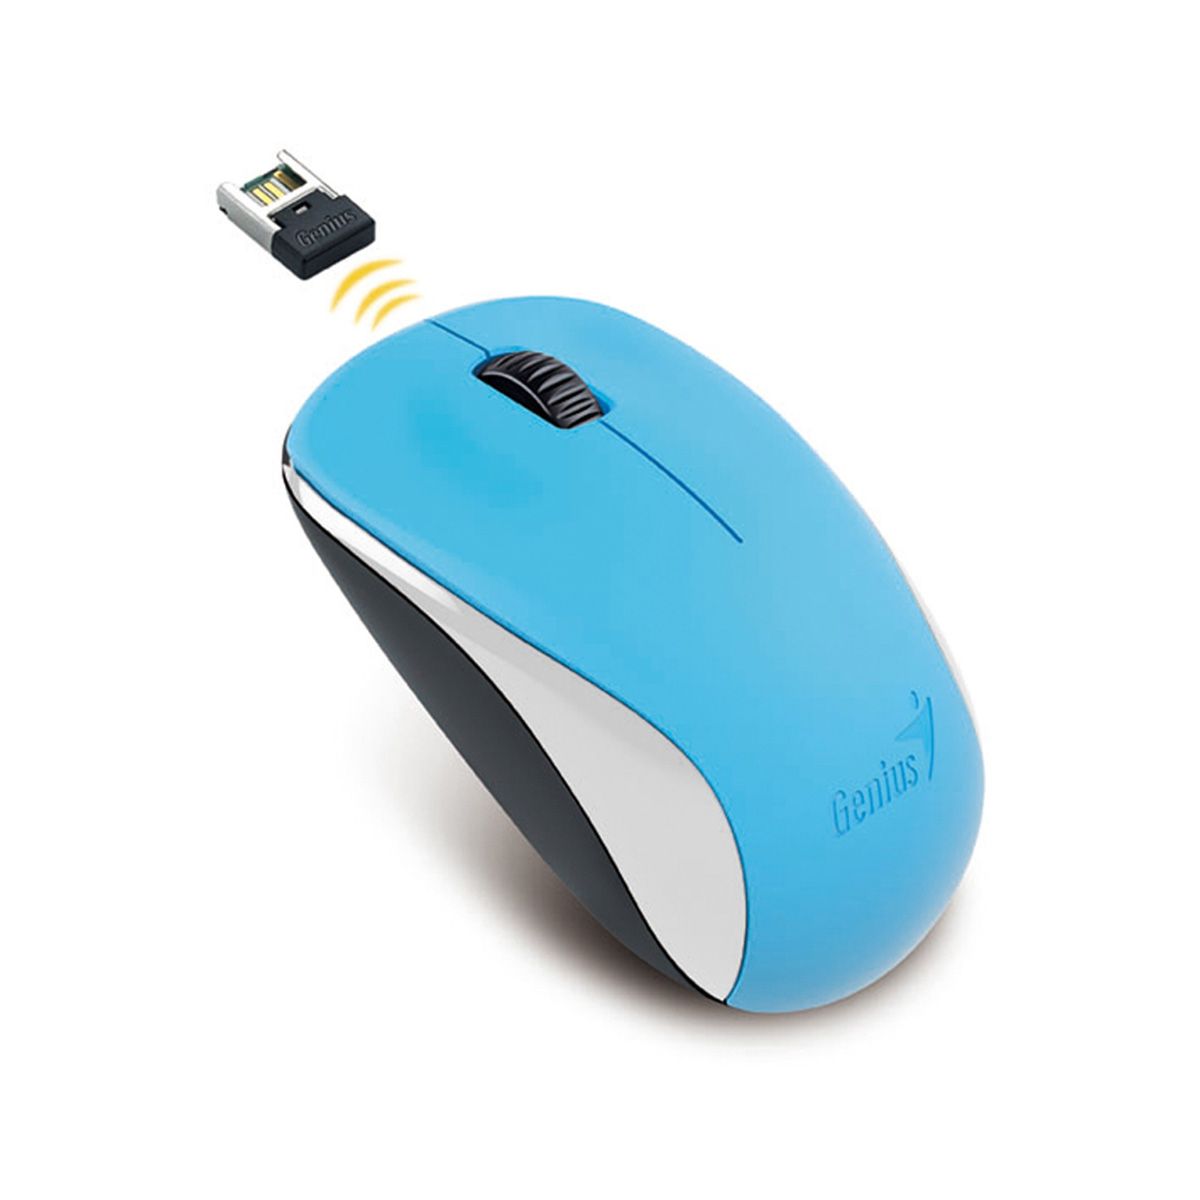 GENIUS เม้าส์ไร้สาย Wireless Mouse BlueEye NX-7000 (Blue)